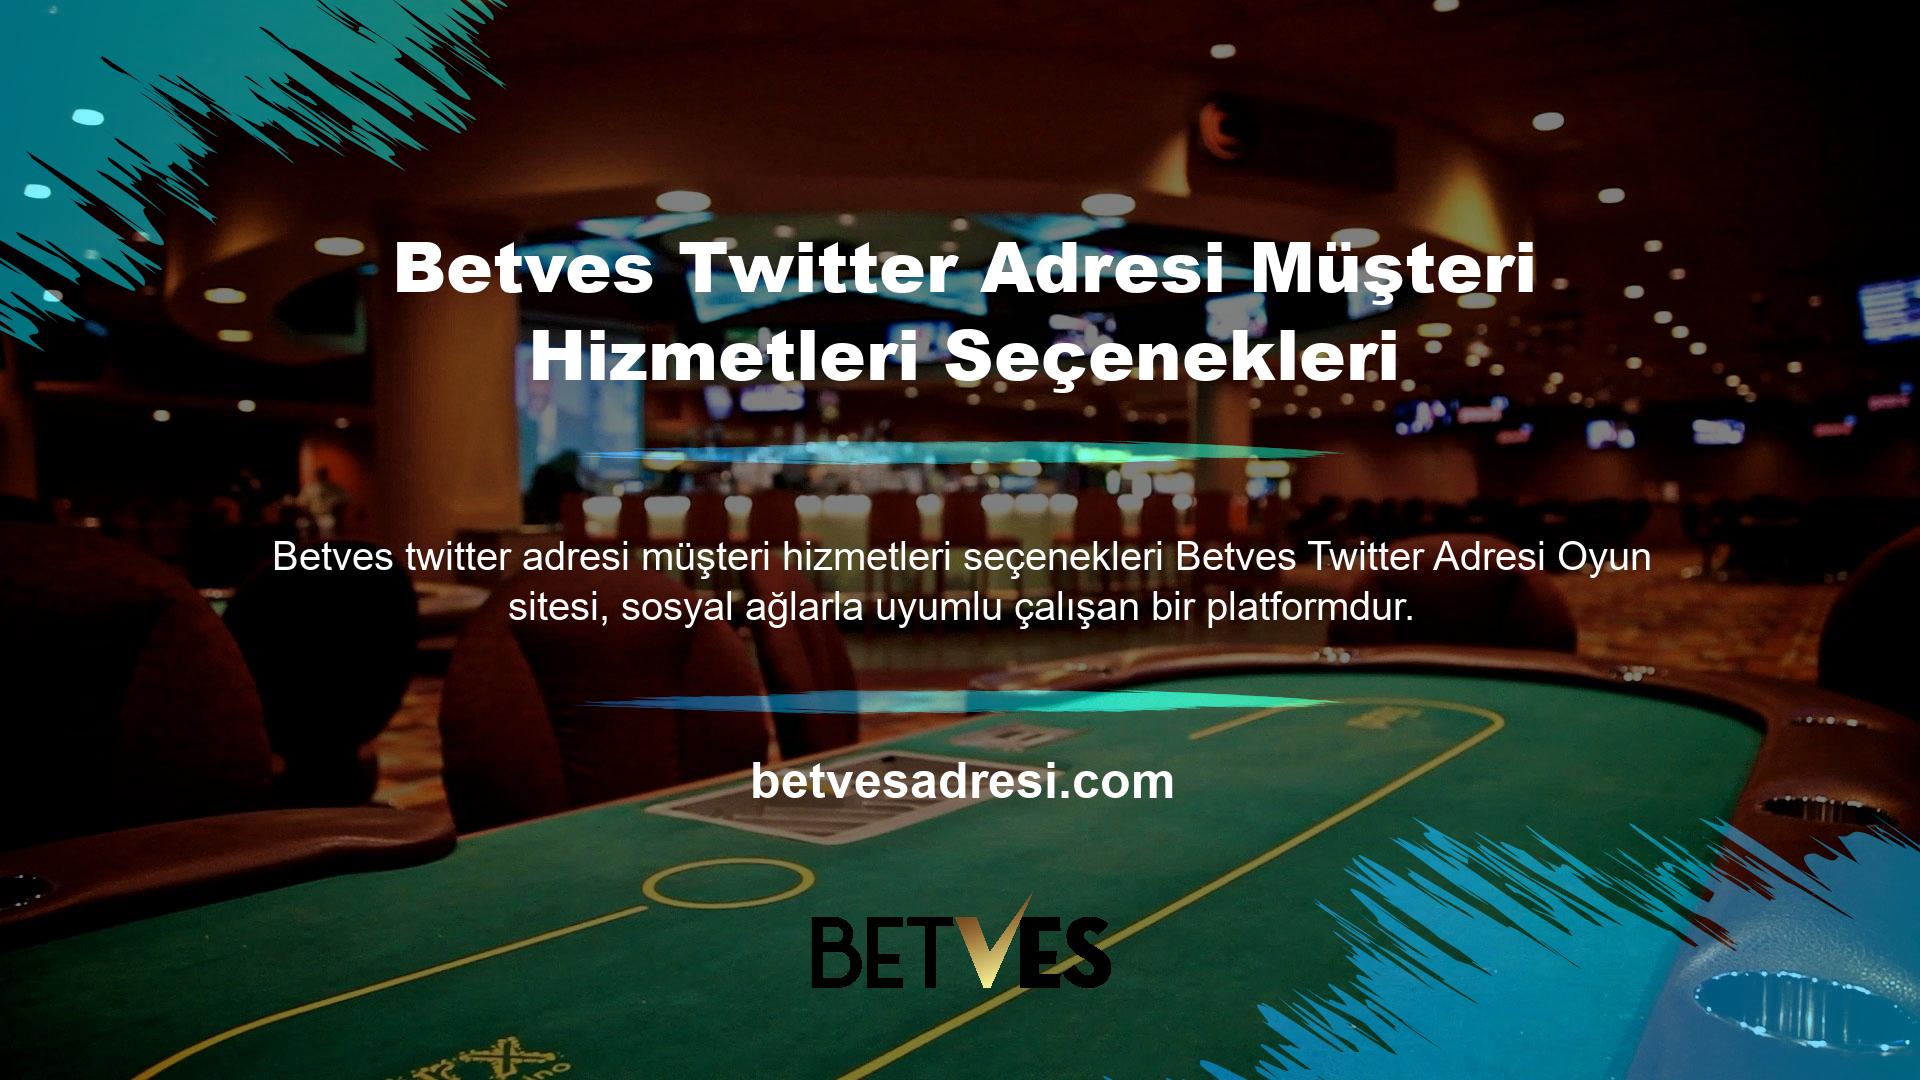 Betves Twitter adresi Oyun sitesi, sosyal ağlarla uyumlu çalışan bir platformdur